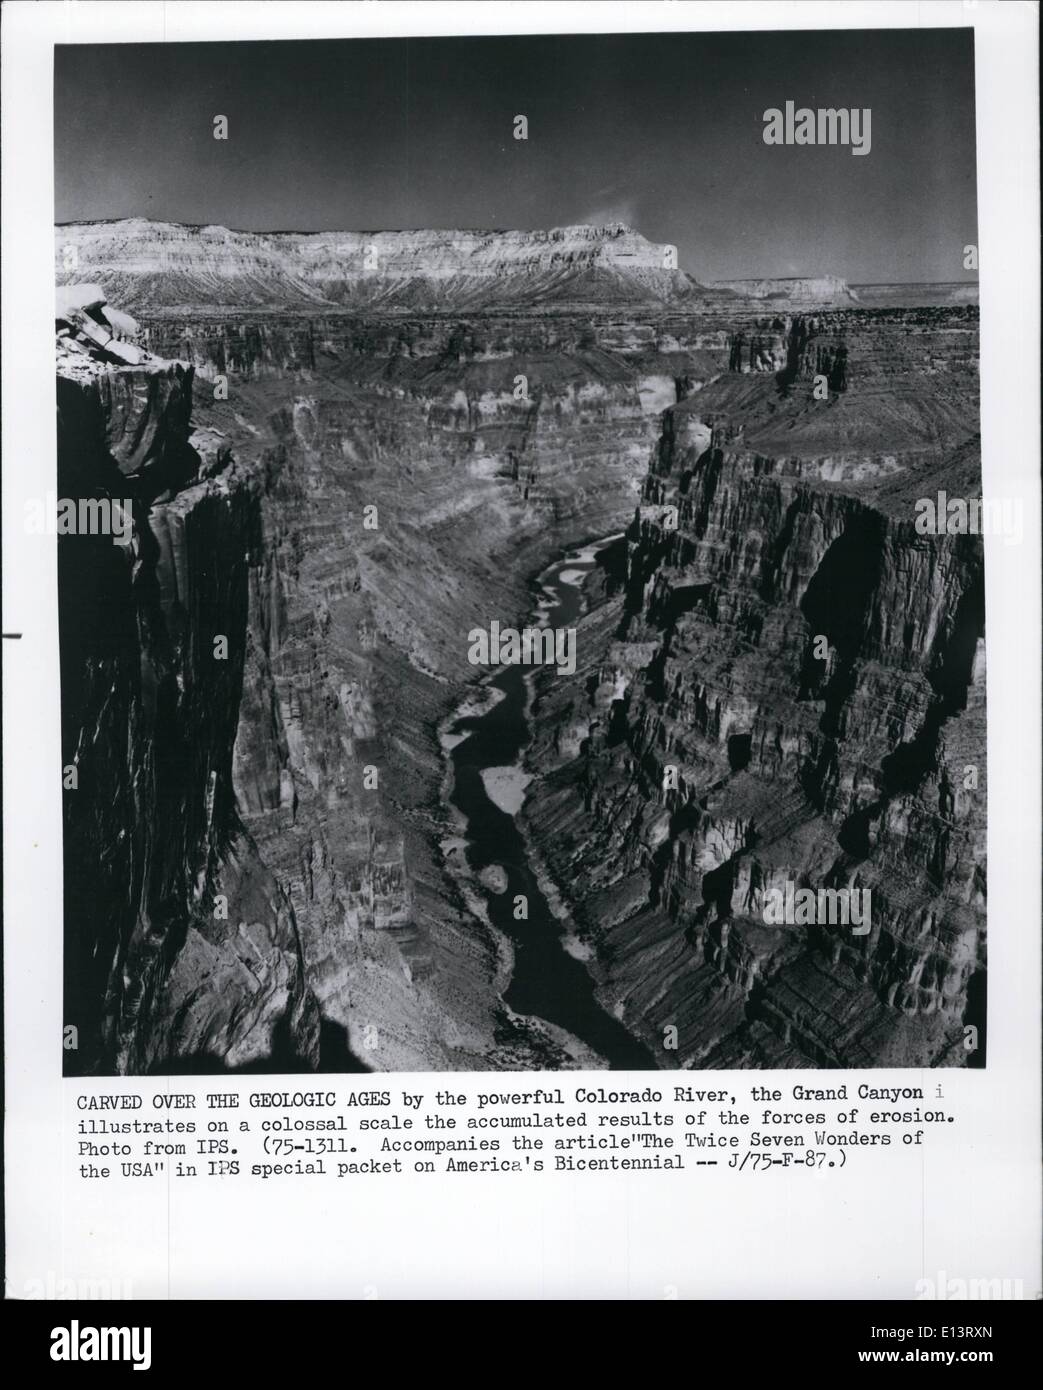 27 mar 2012 - scolpito oltre le epoche geologiche dal potente fiume Colorado e il Grand Canyon illustra su una scala colossale i risultati accumulati delle forze di erosione. Foto Stock